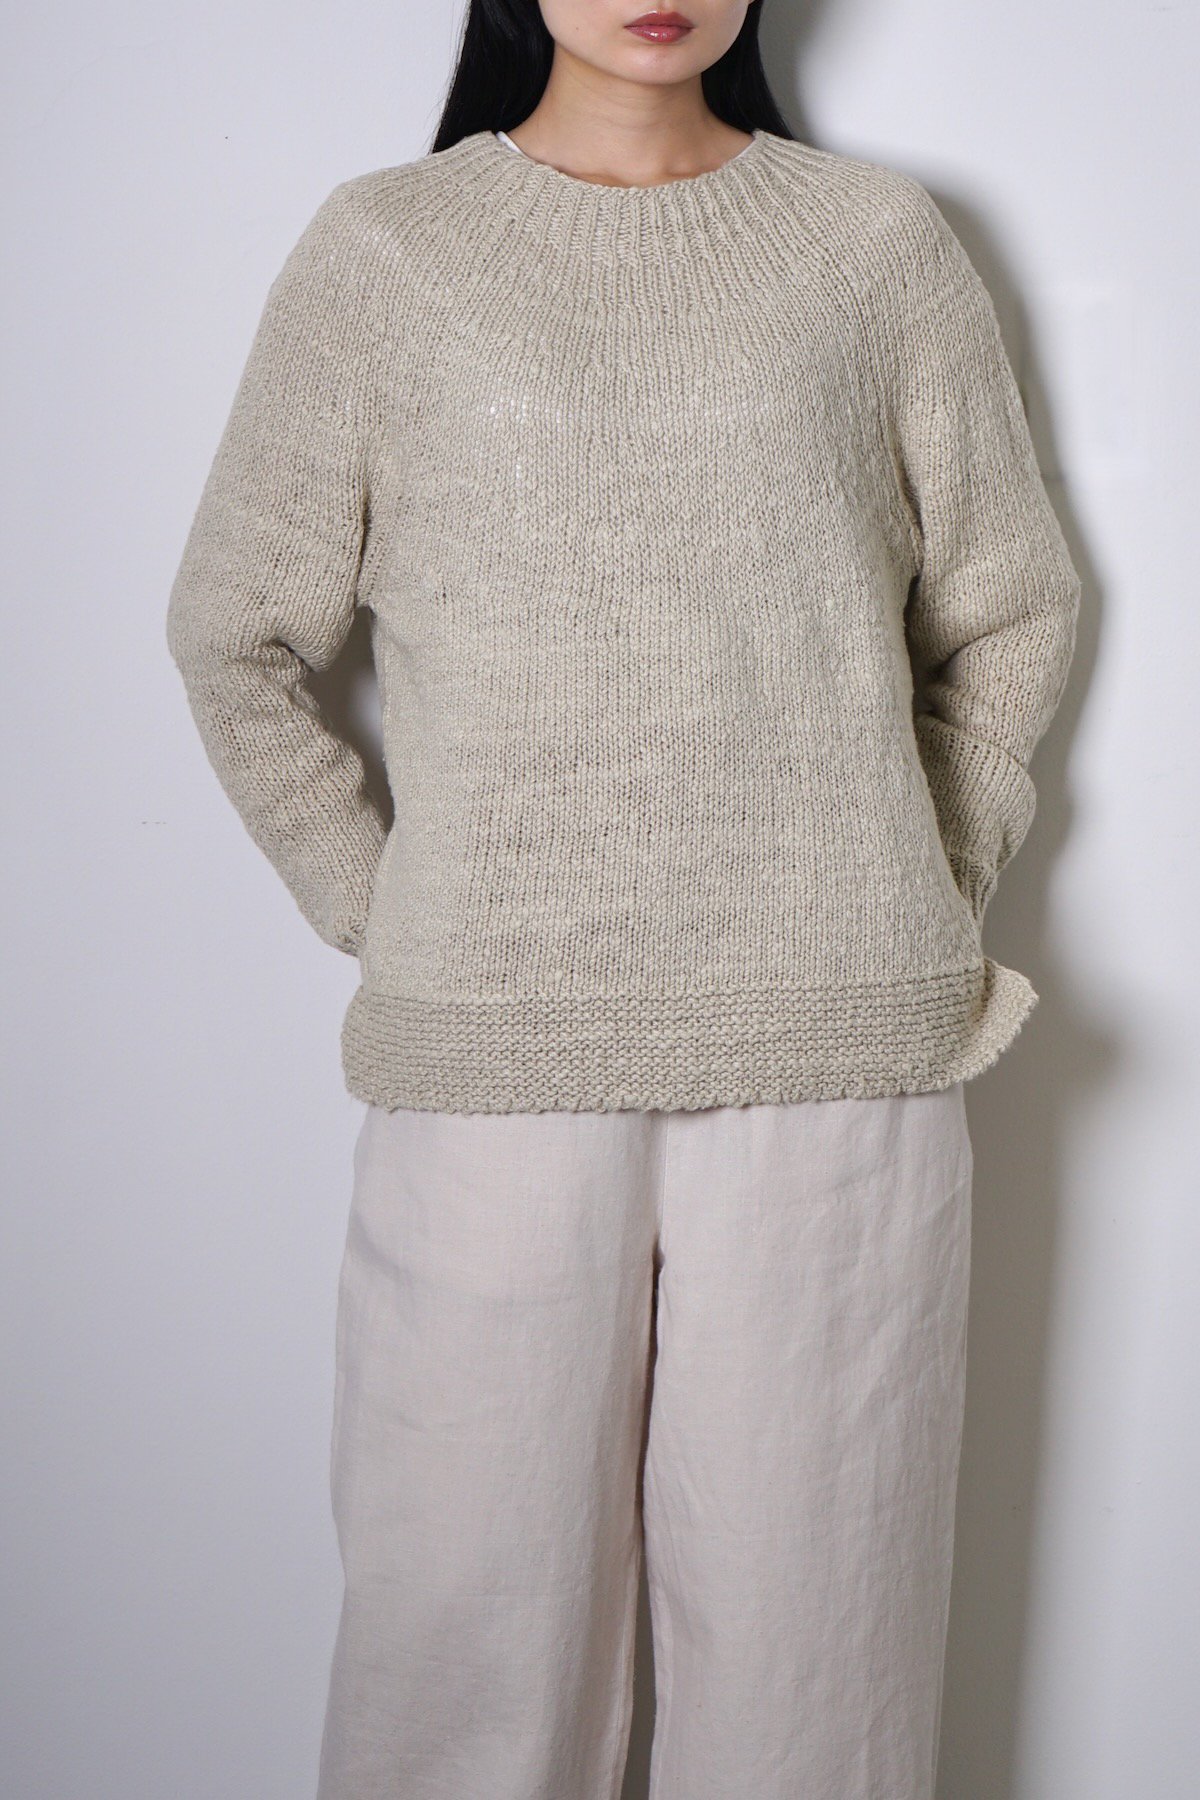 COSMIC WONDER / Garabou summer sweater / Light beige